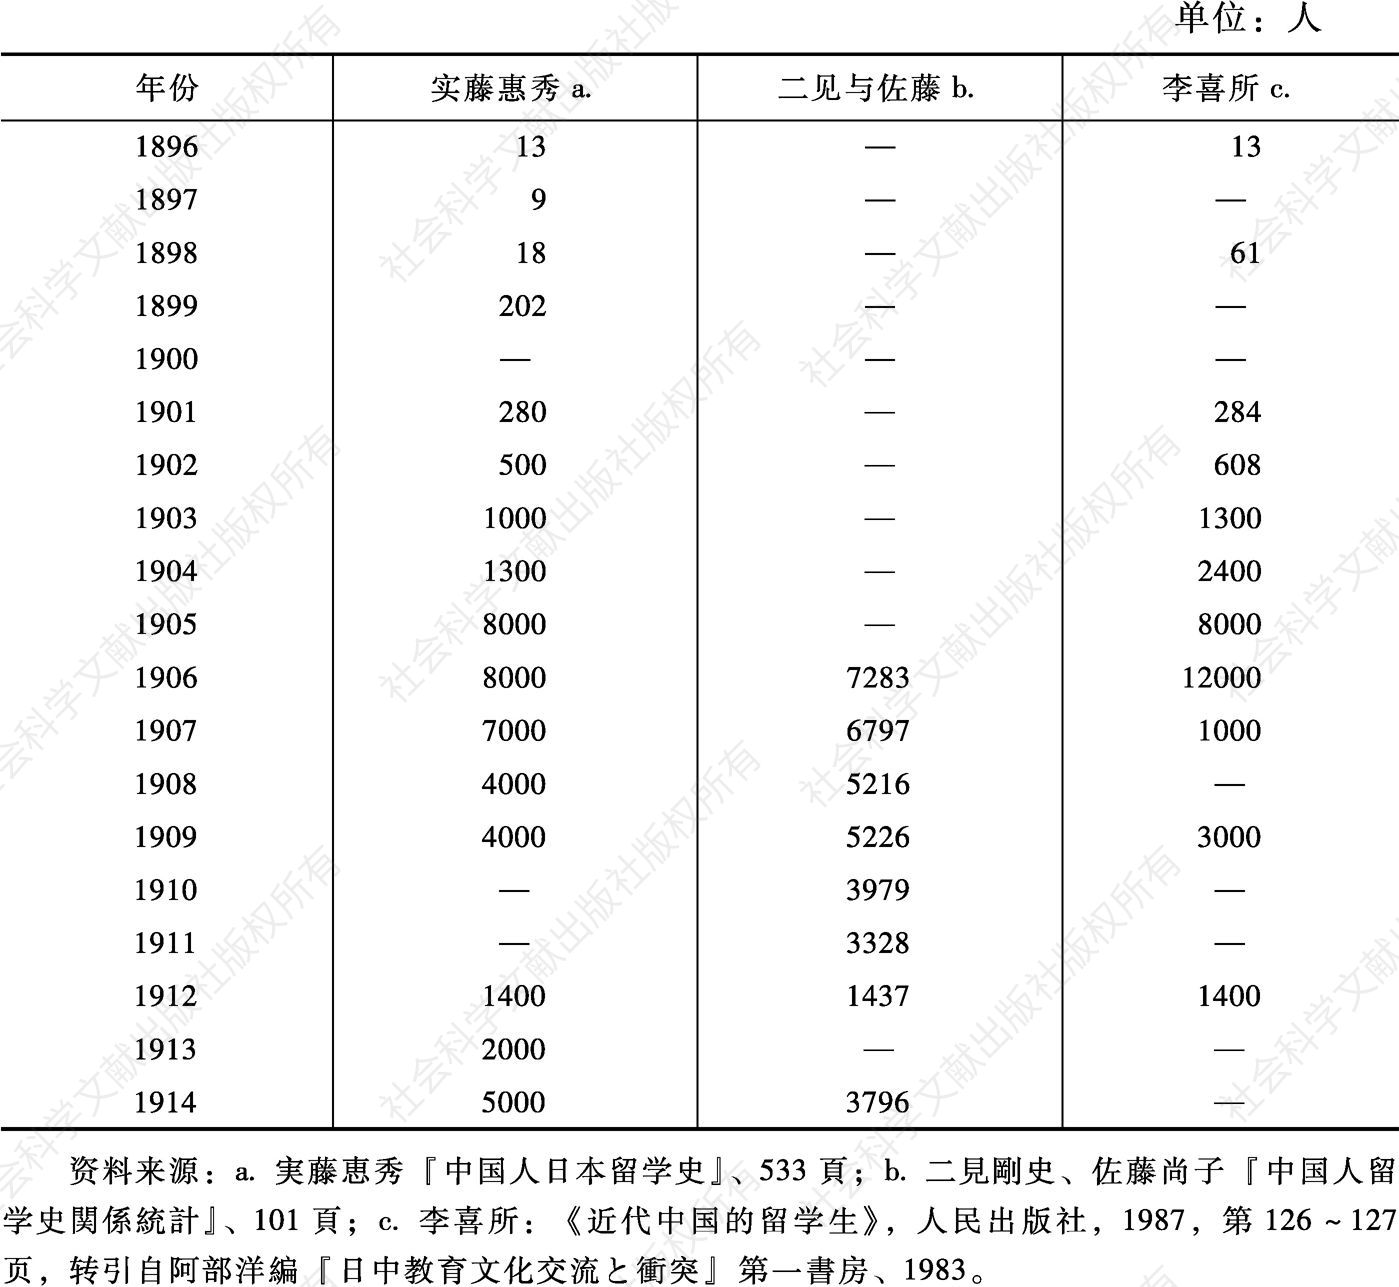 表2-1 中国赴日留学生统计（1896～1914）